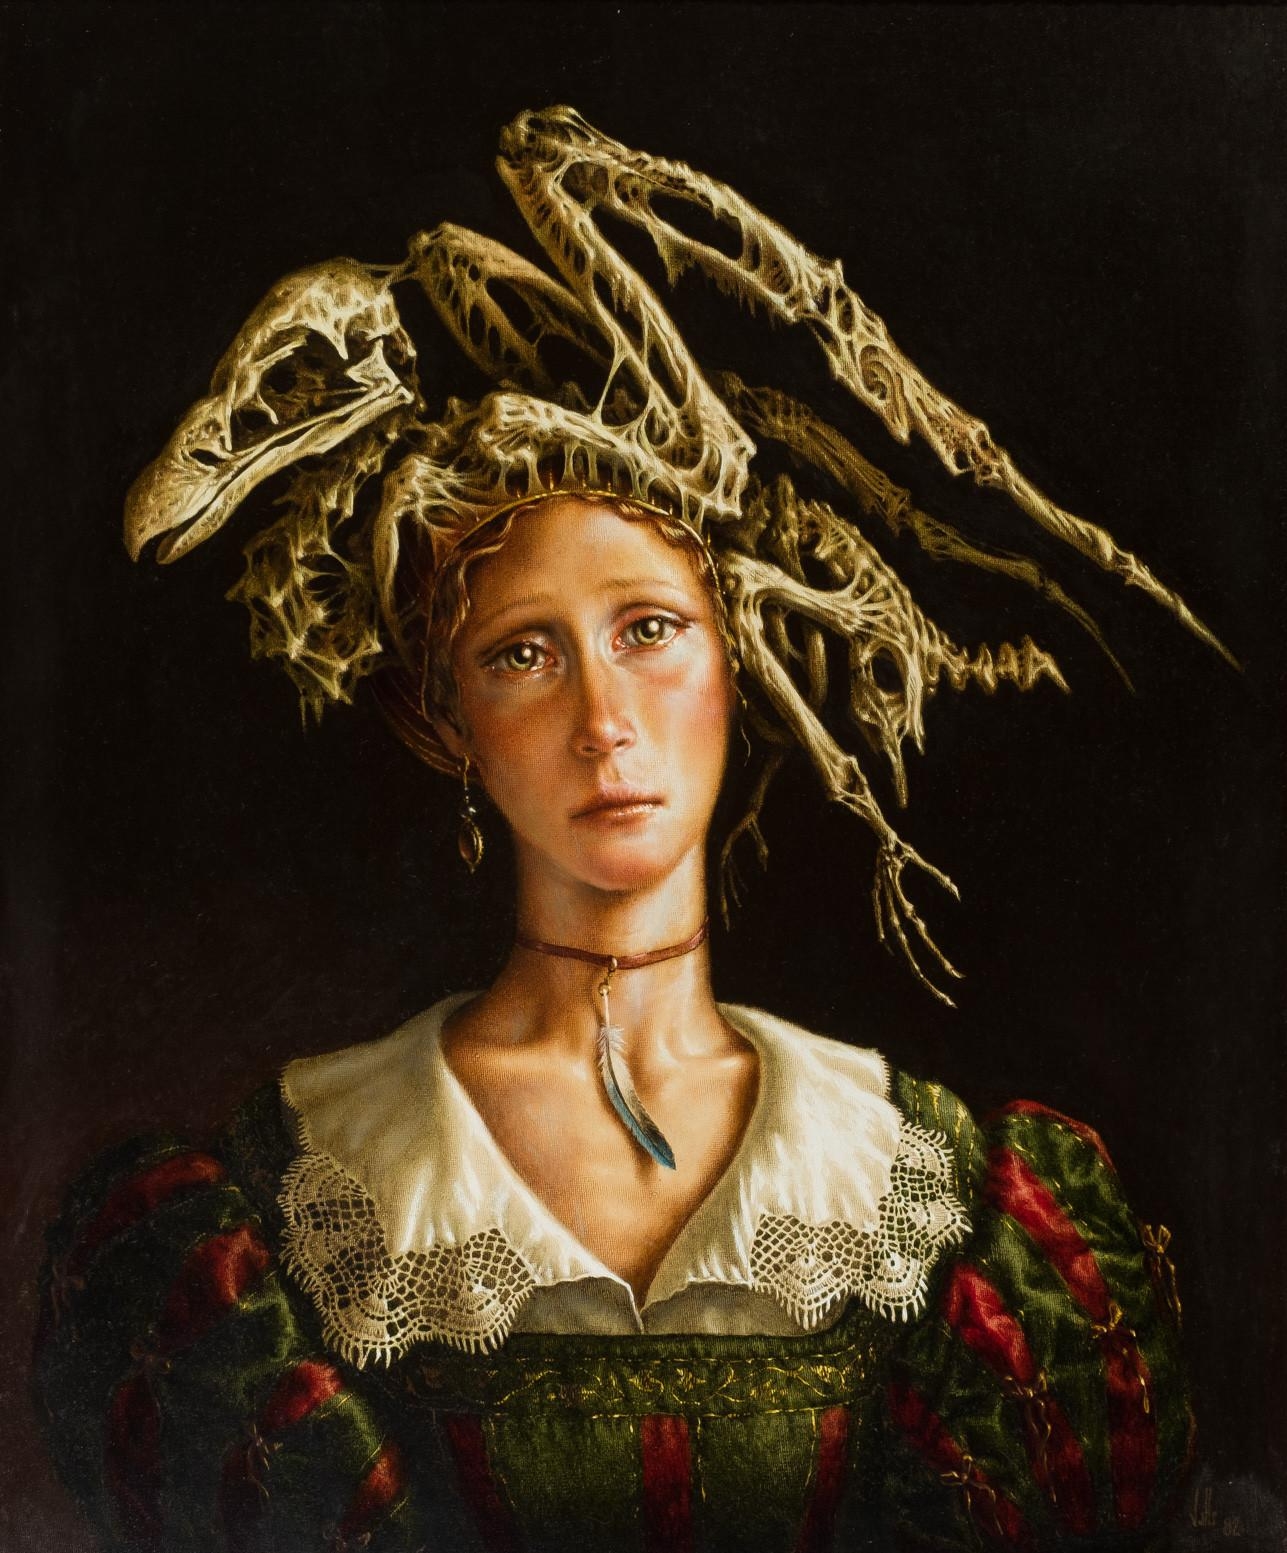 Artwork by Dino Valls, La dama de la pluma, Made of Oil on canvas.